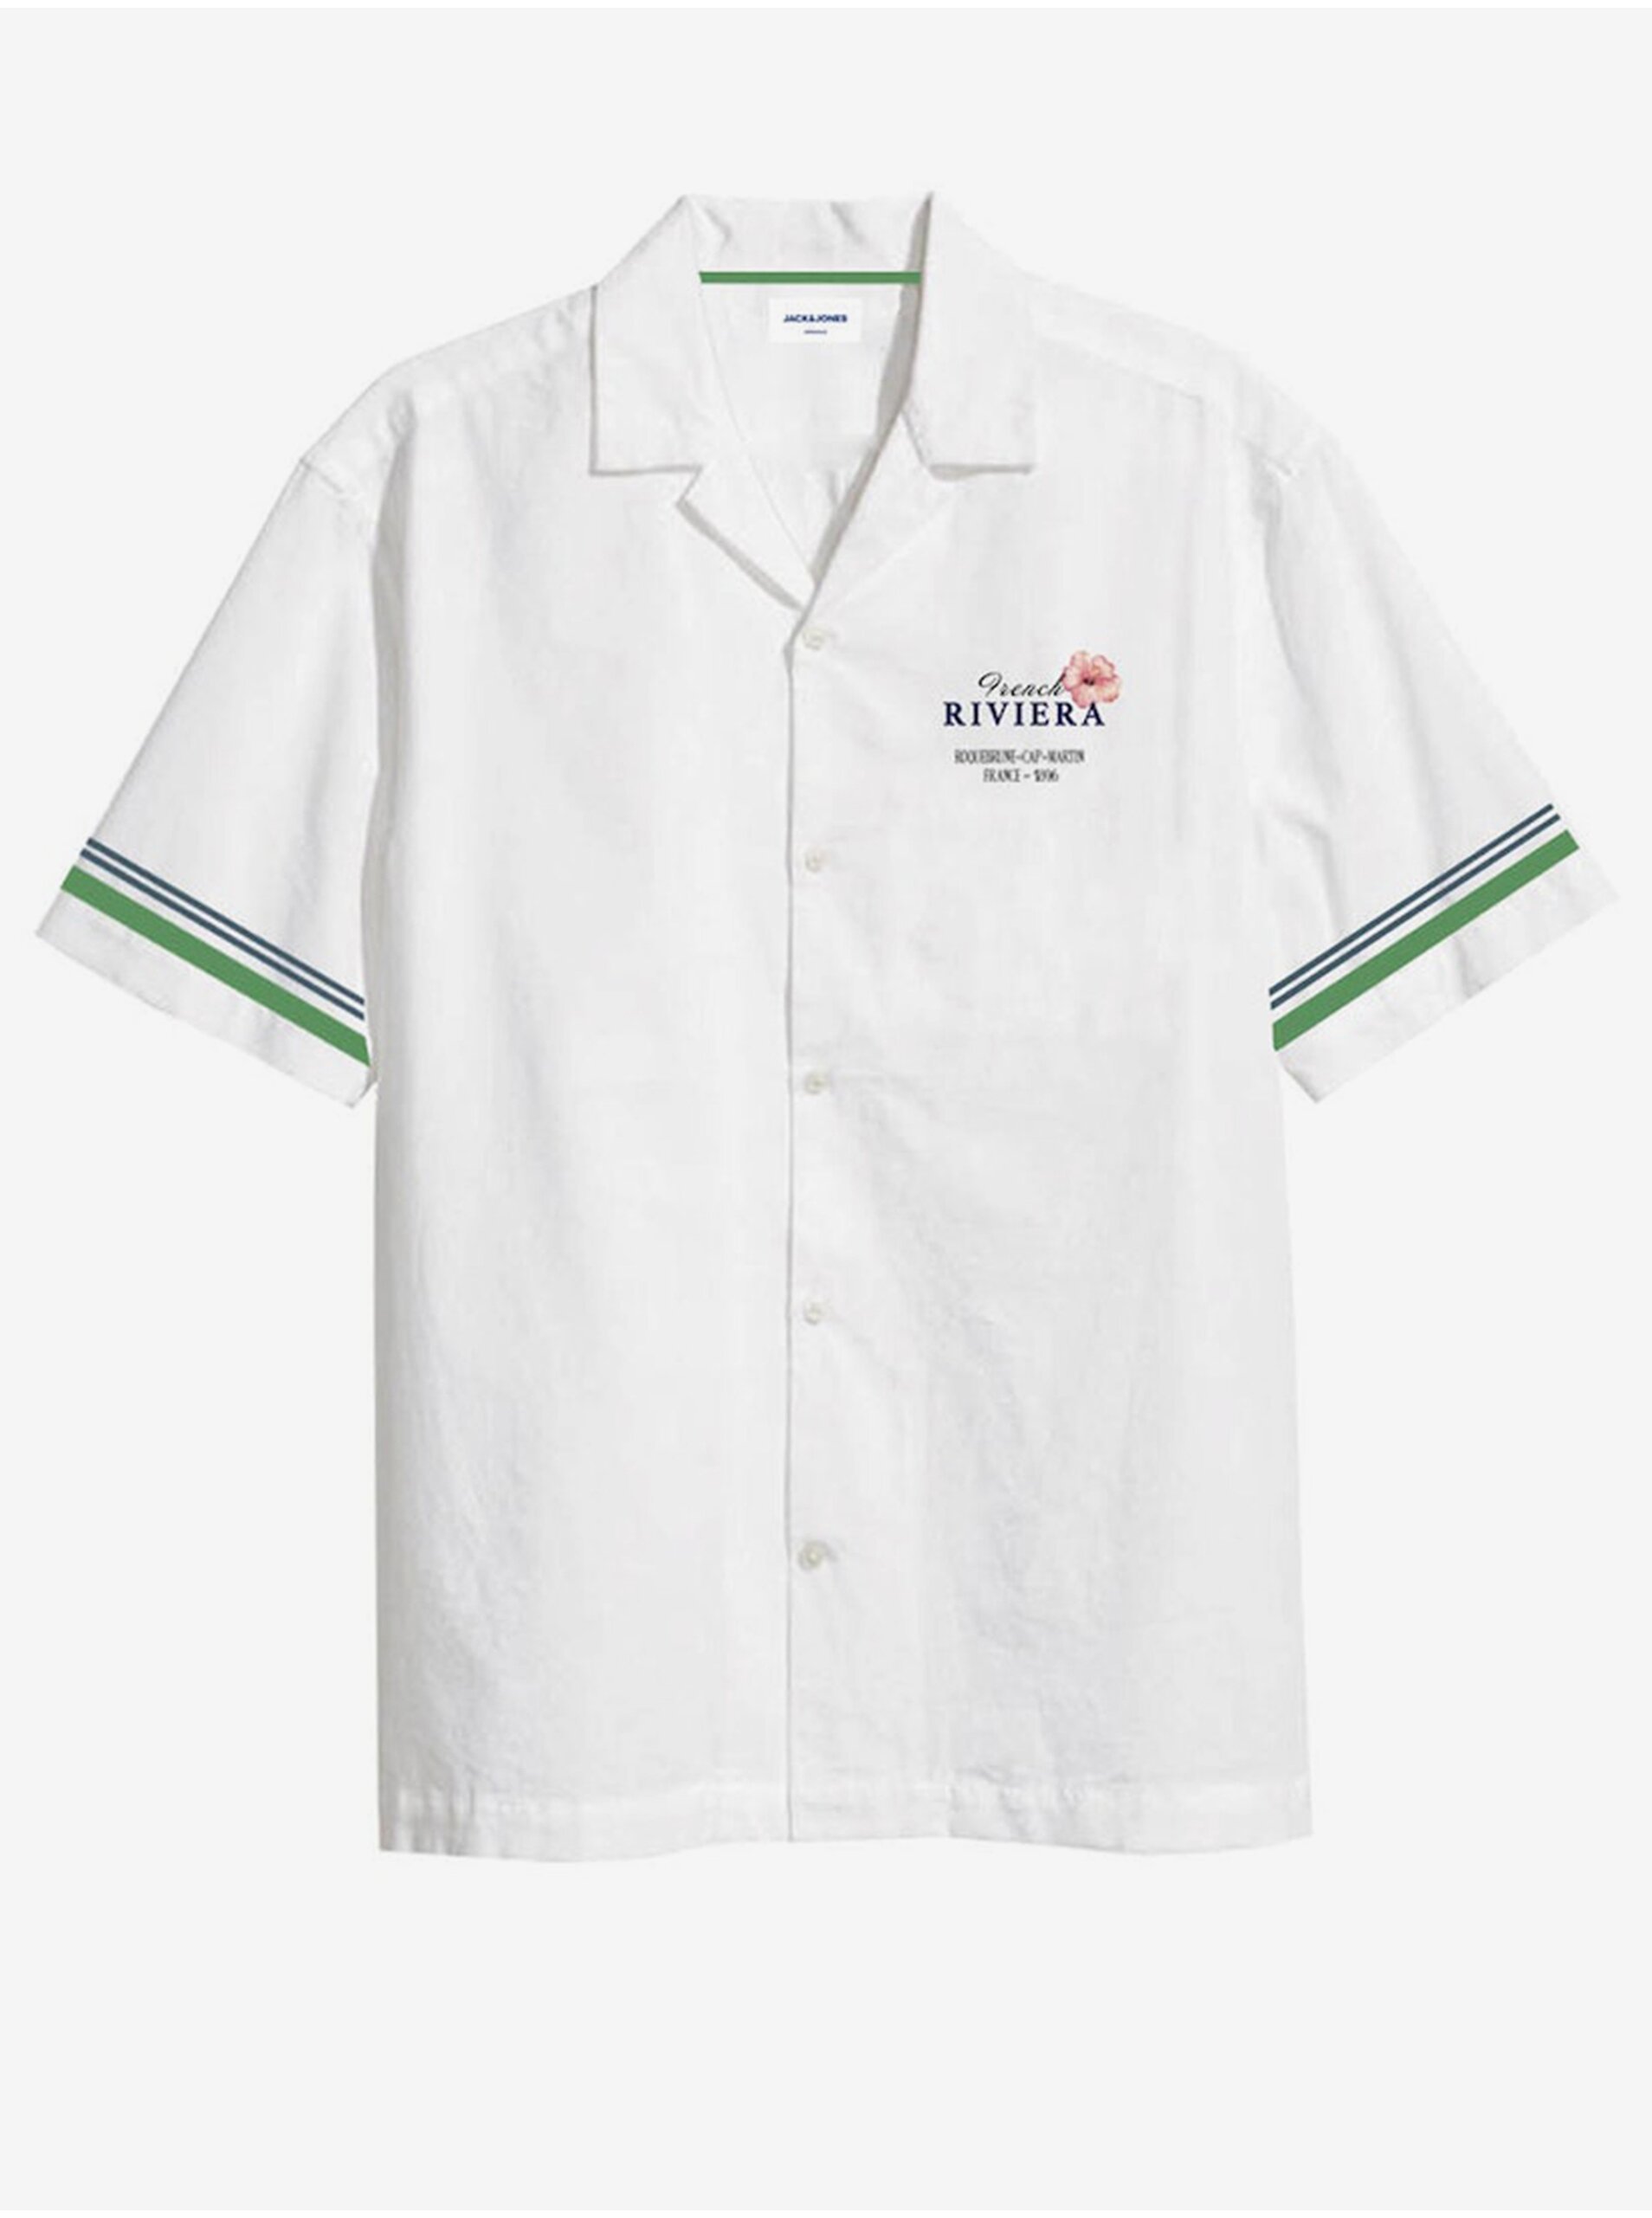 Bílá pánská košile s krátkým rukávem Jack & Jones Riviera - Pánské